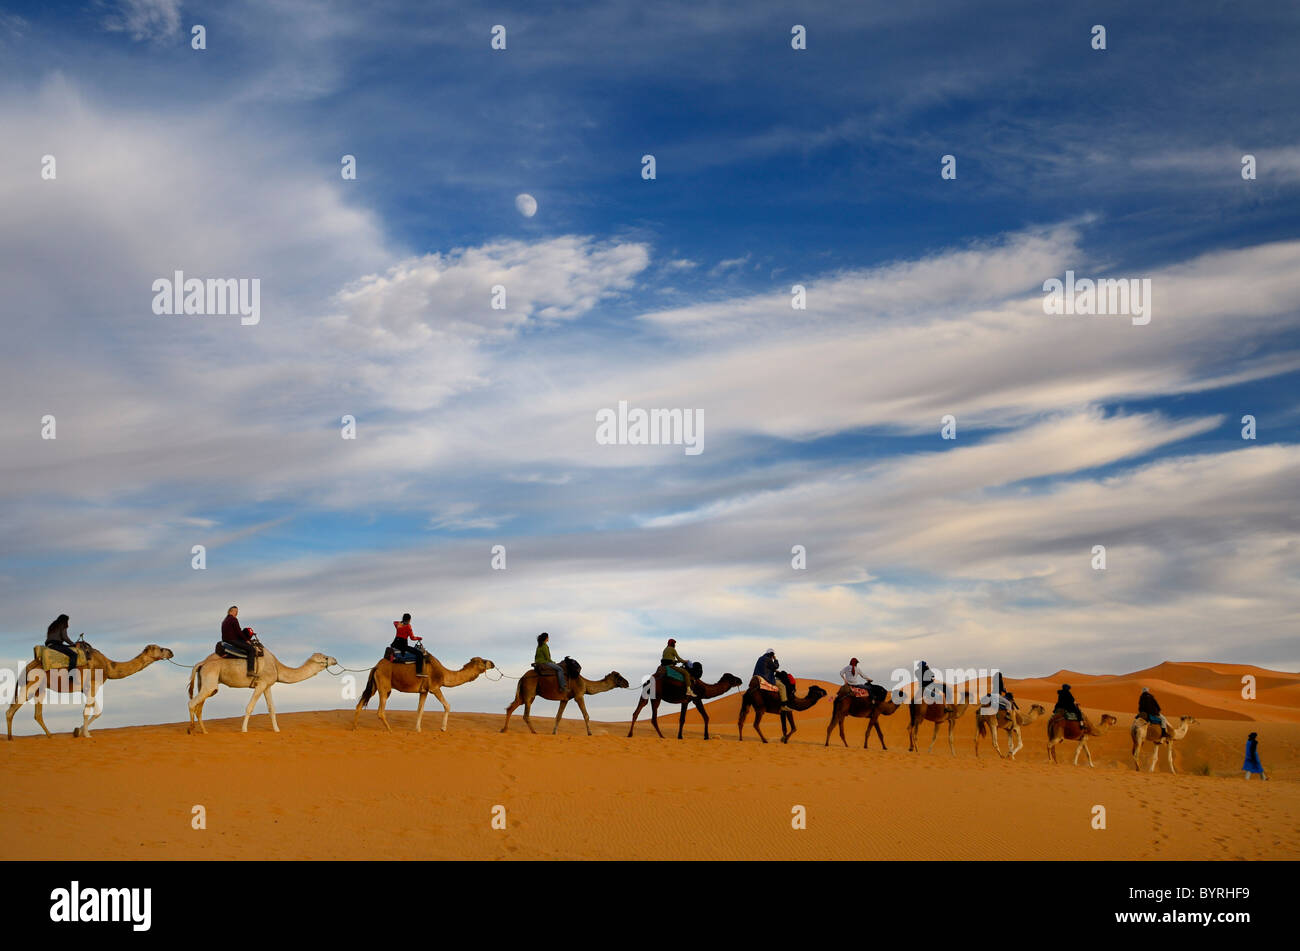 Azul tuareg berebere hombre conduciendo un grupo de jinetes de camellos en una línea con el Erg Chebbi : desierto en Marruecos con la luna y las nubes Foto de stock